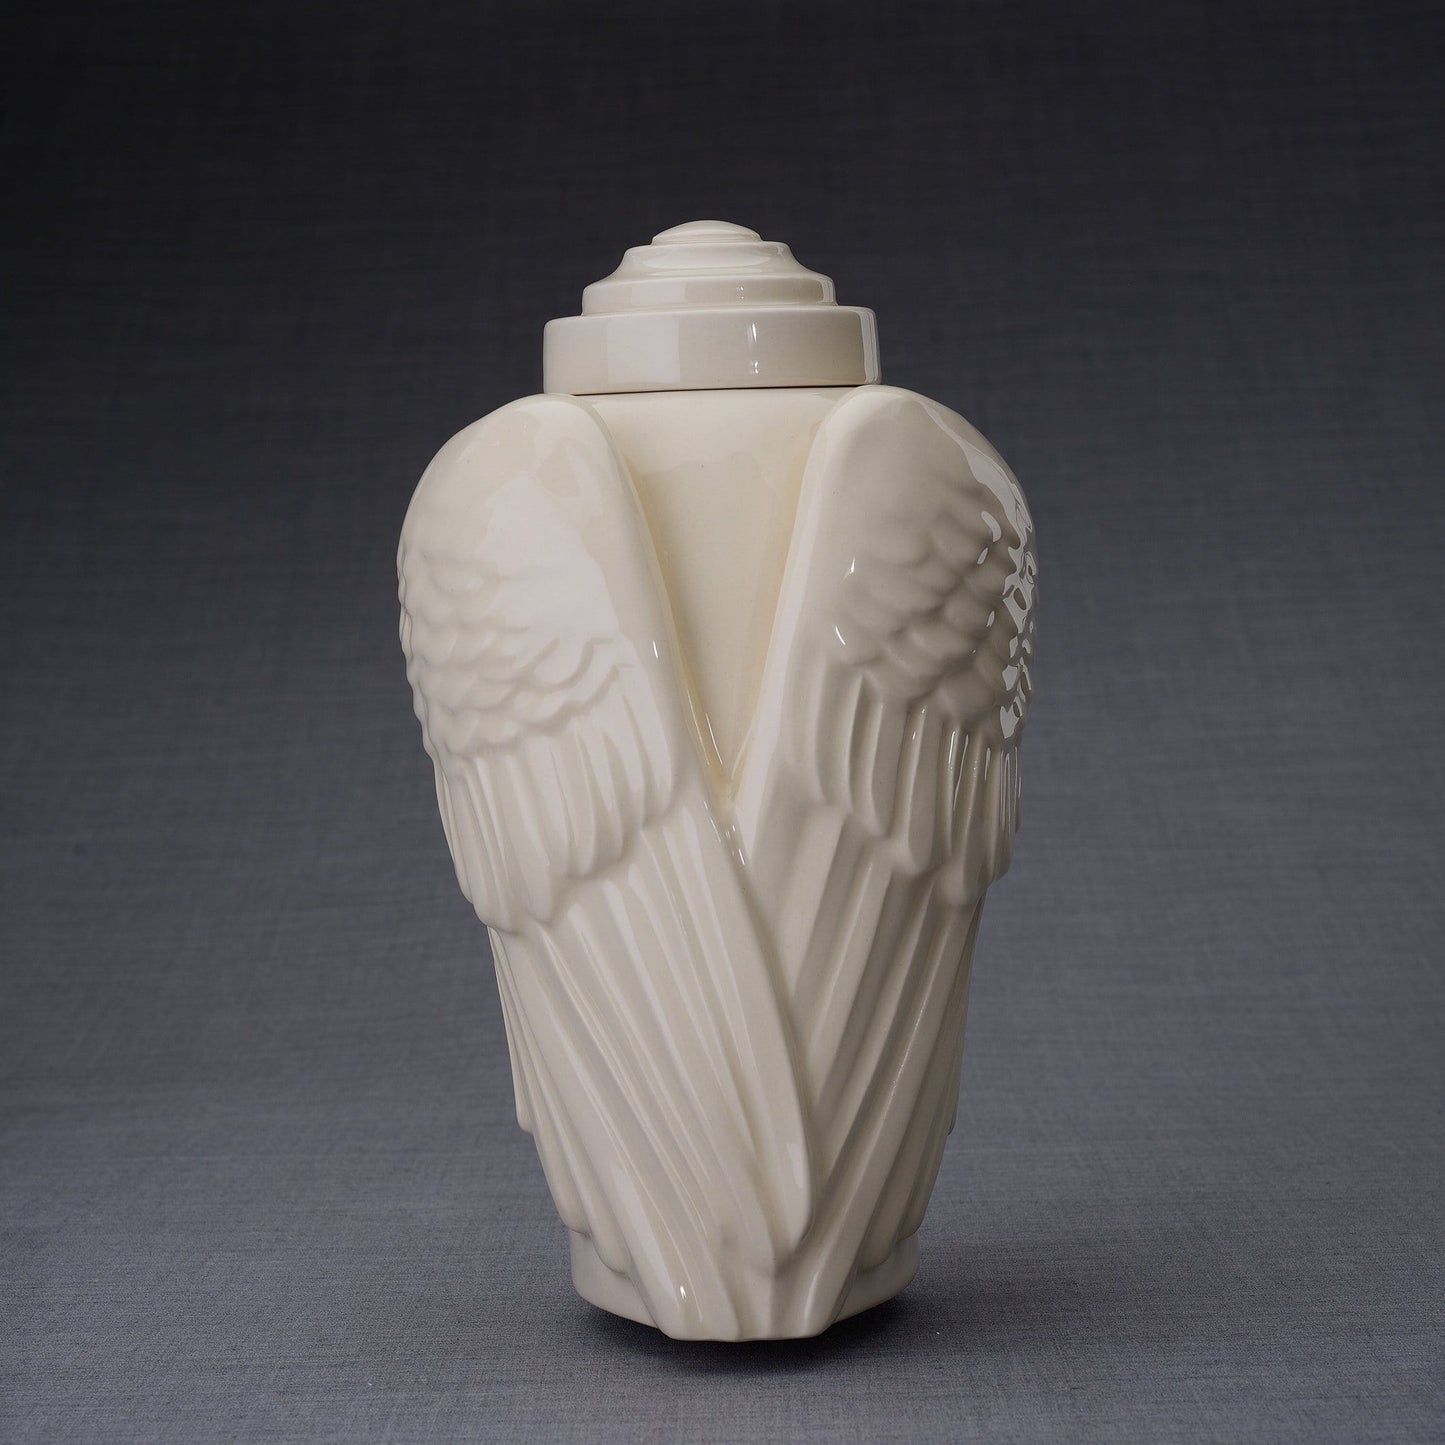 
                  
                    Wings Handmade Cremation Urn for Ashes, size Large/Adult, color Transparent-PulvisArtUrns-Pulvis Art Urns
                  
                